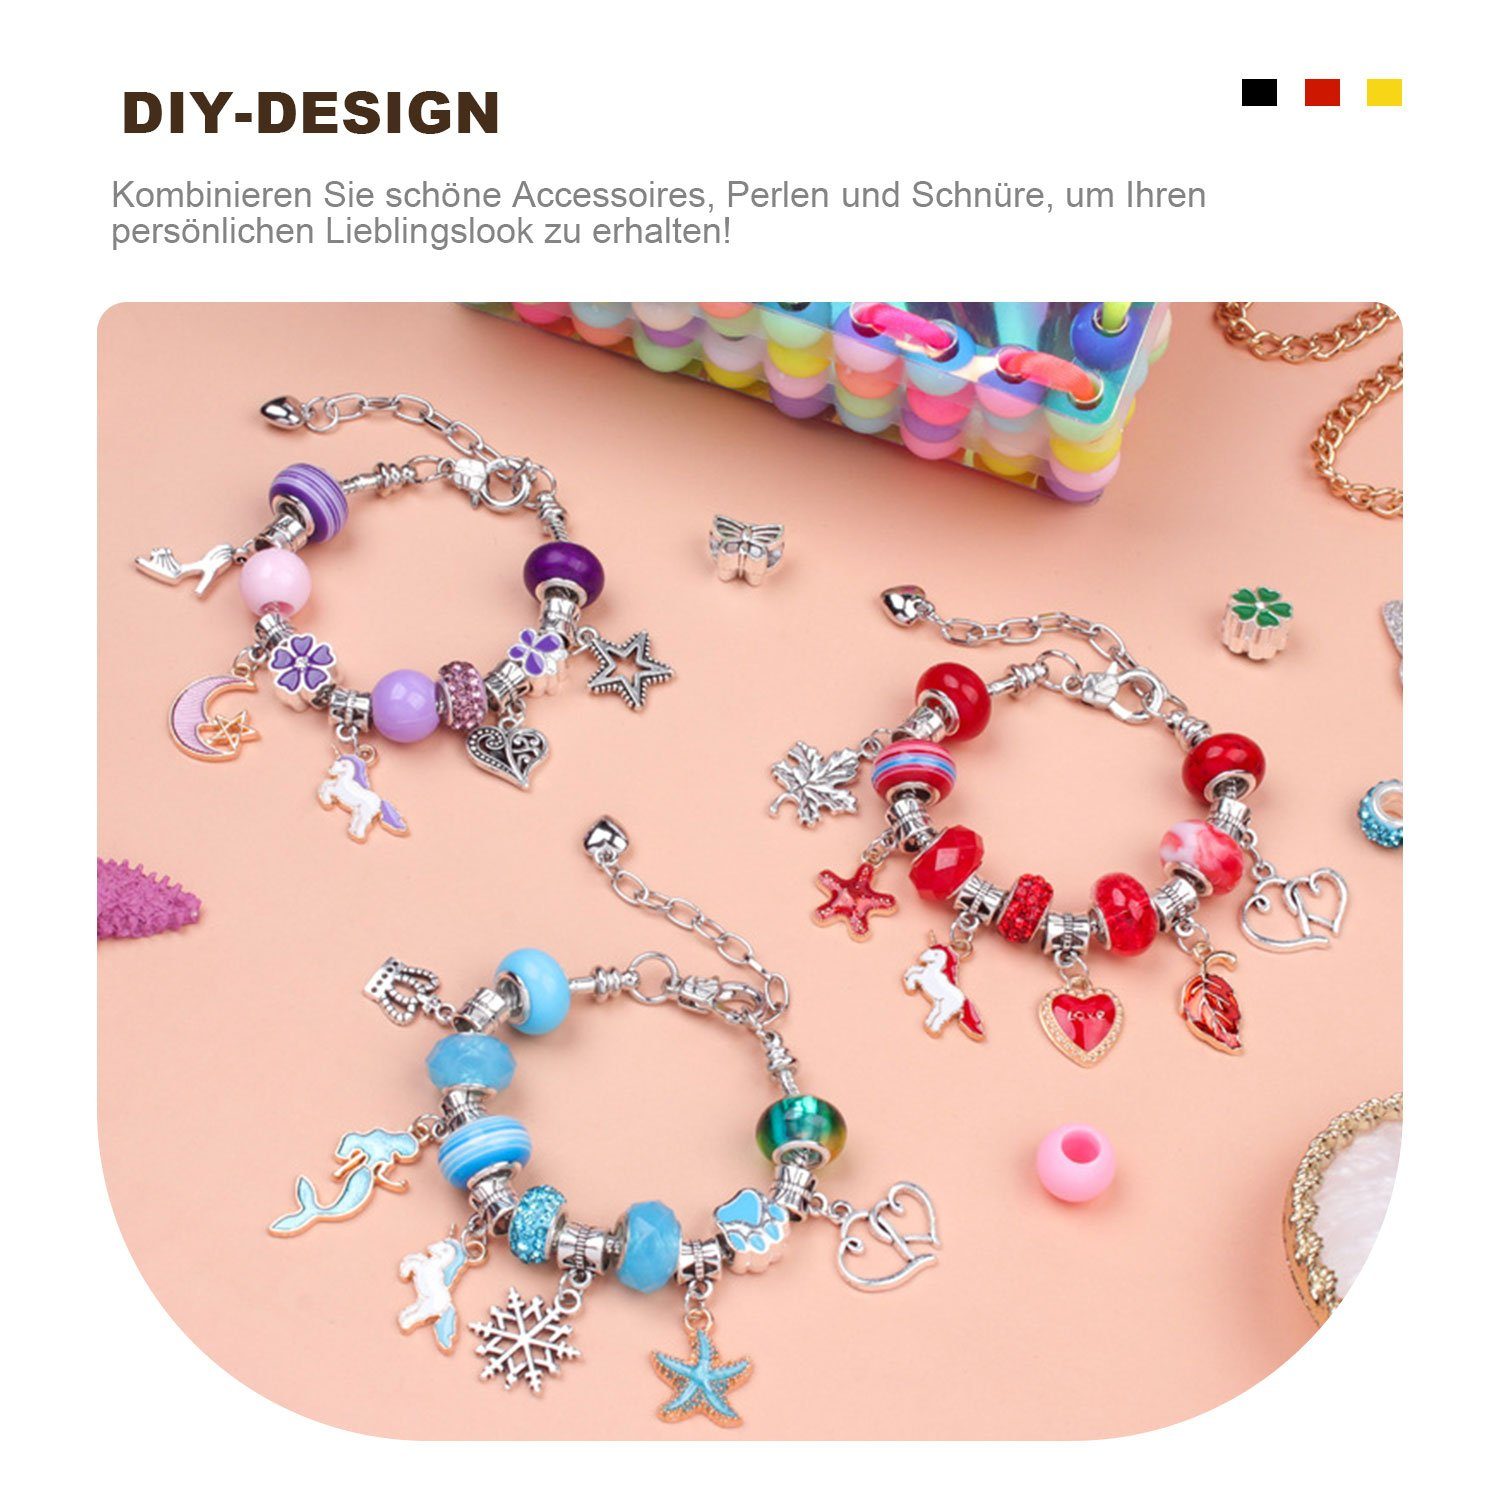 MAGICSHE Armketten Set Aufbewahrungstasche Schmuck bunte DIY Buntes Pailletten GIFT Armband für Kinder, Handgefertigtes Set GIRL